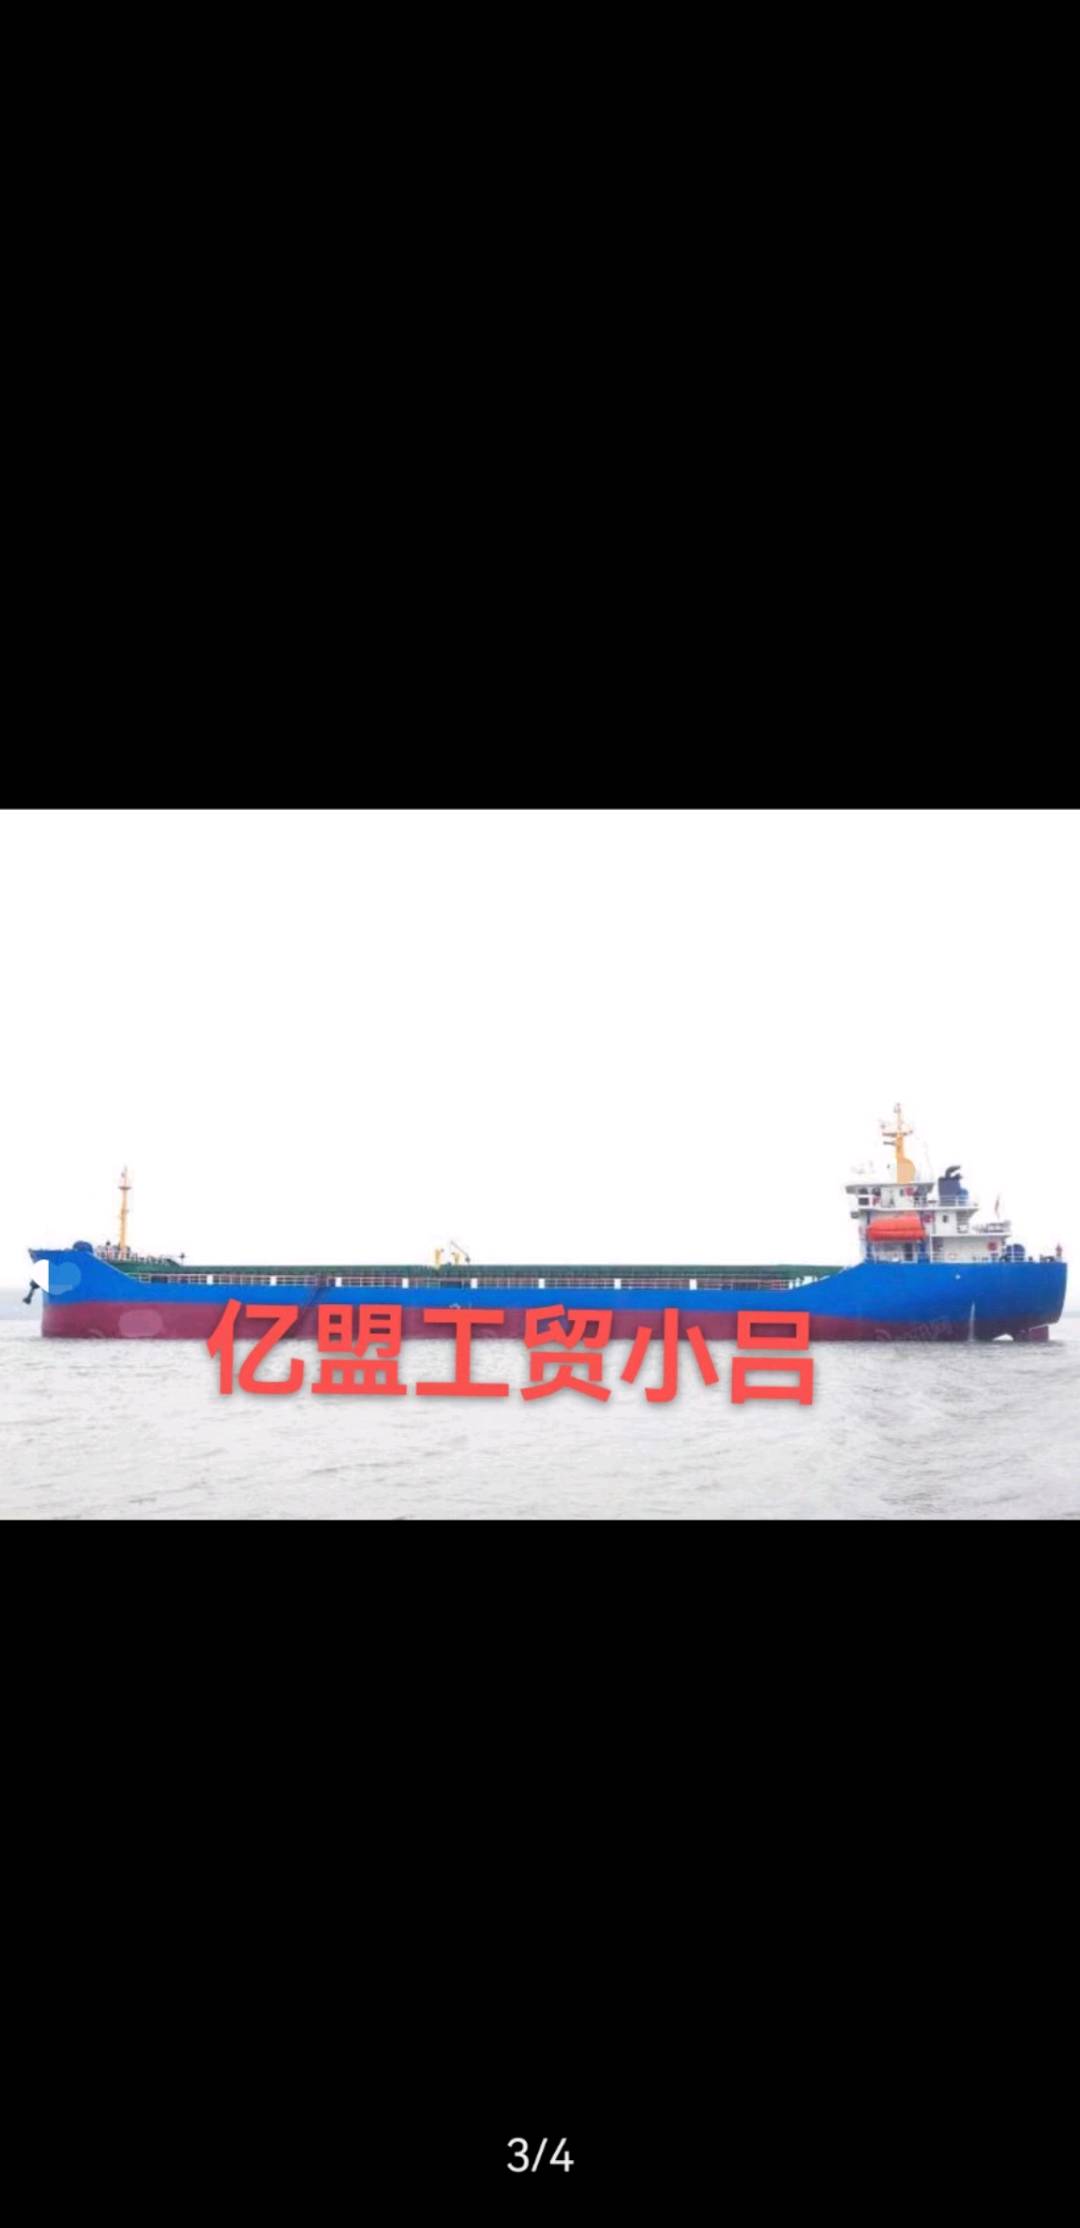 出售6900吨散货船